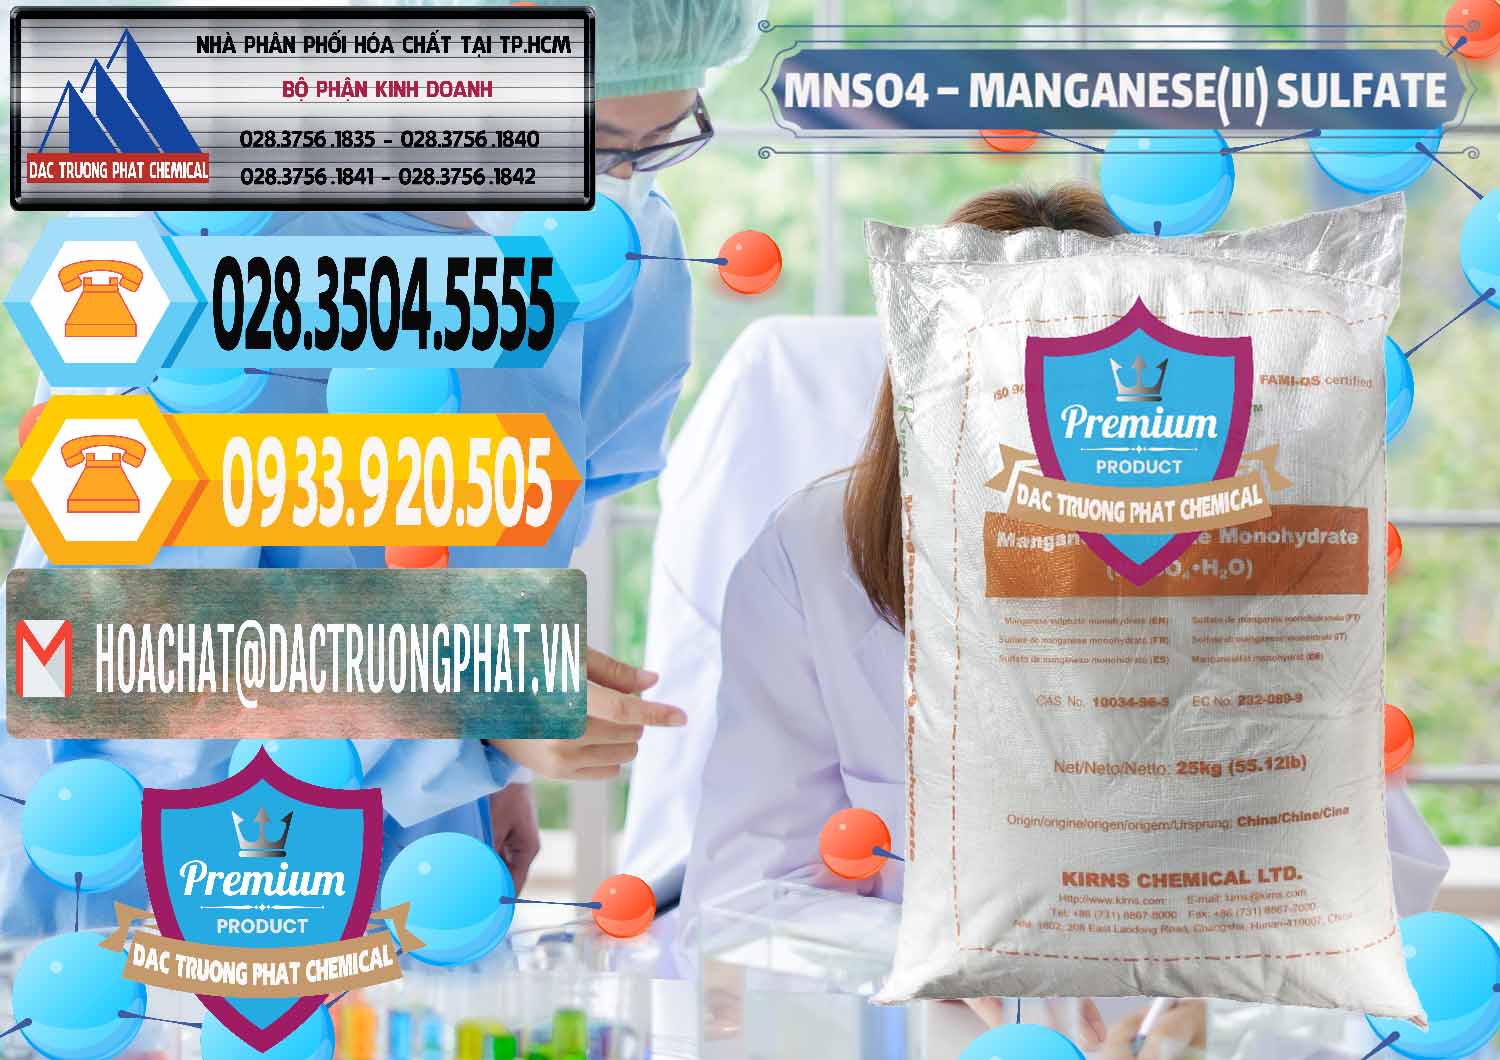 Chuyên bán _ cung cấp MNSO4 – Manganese (II) Sulfate Kirns Trung Quốc China - 0095 - Cty bán & cung cấp hóa chất tại TP.HCM - hoachattayrua.net